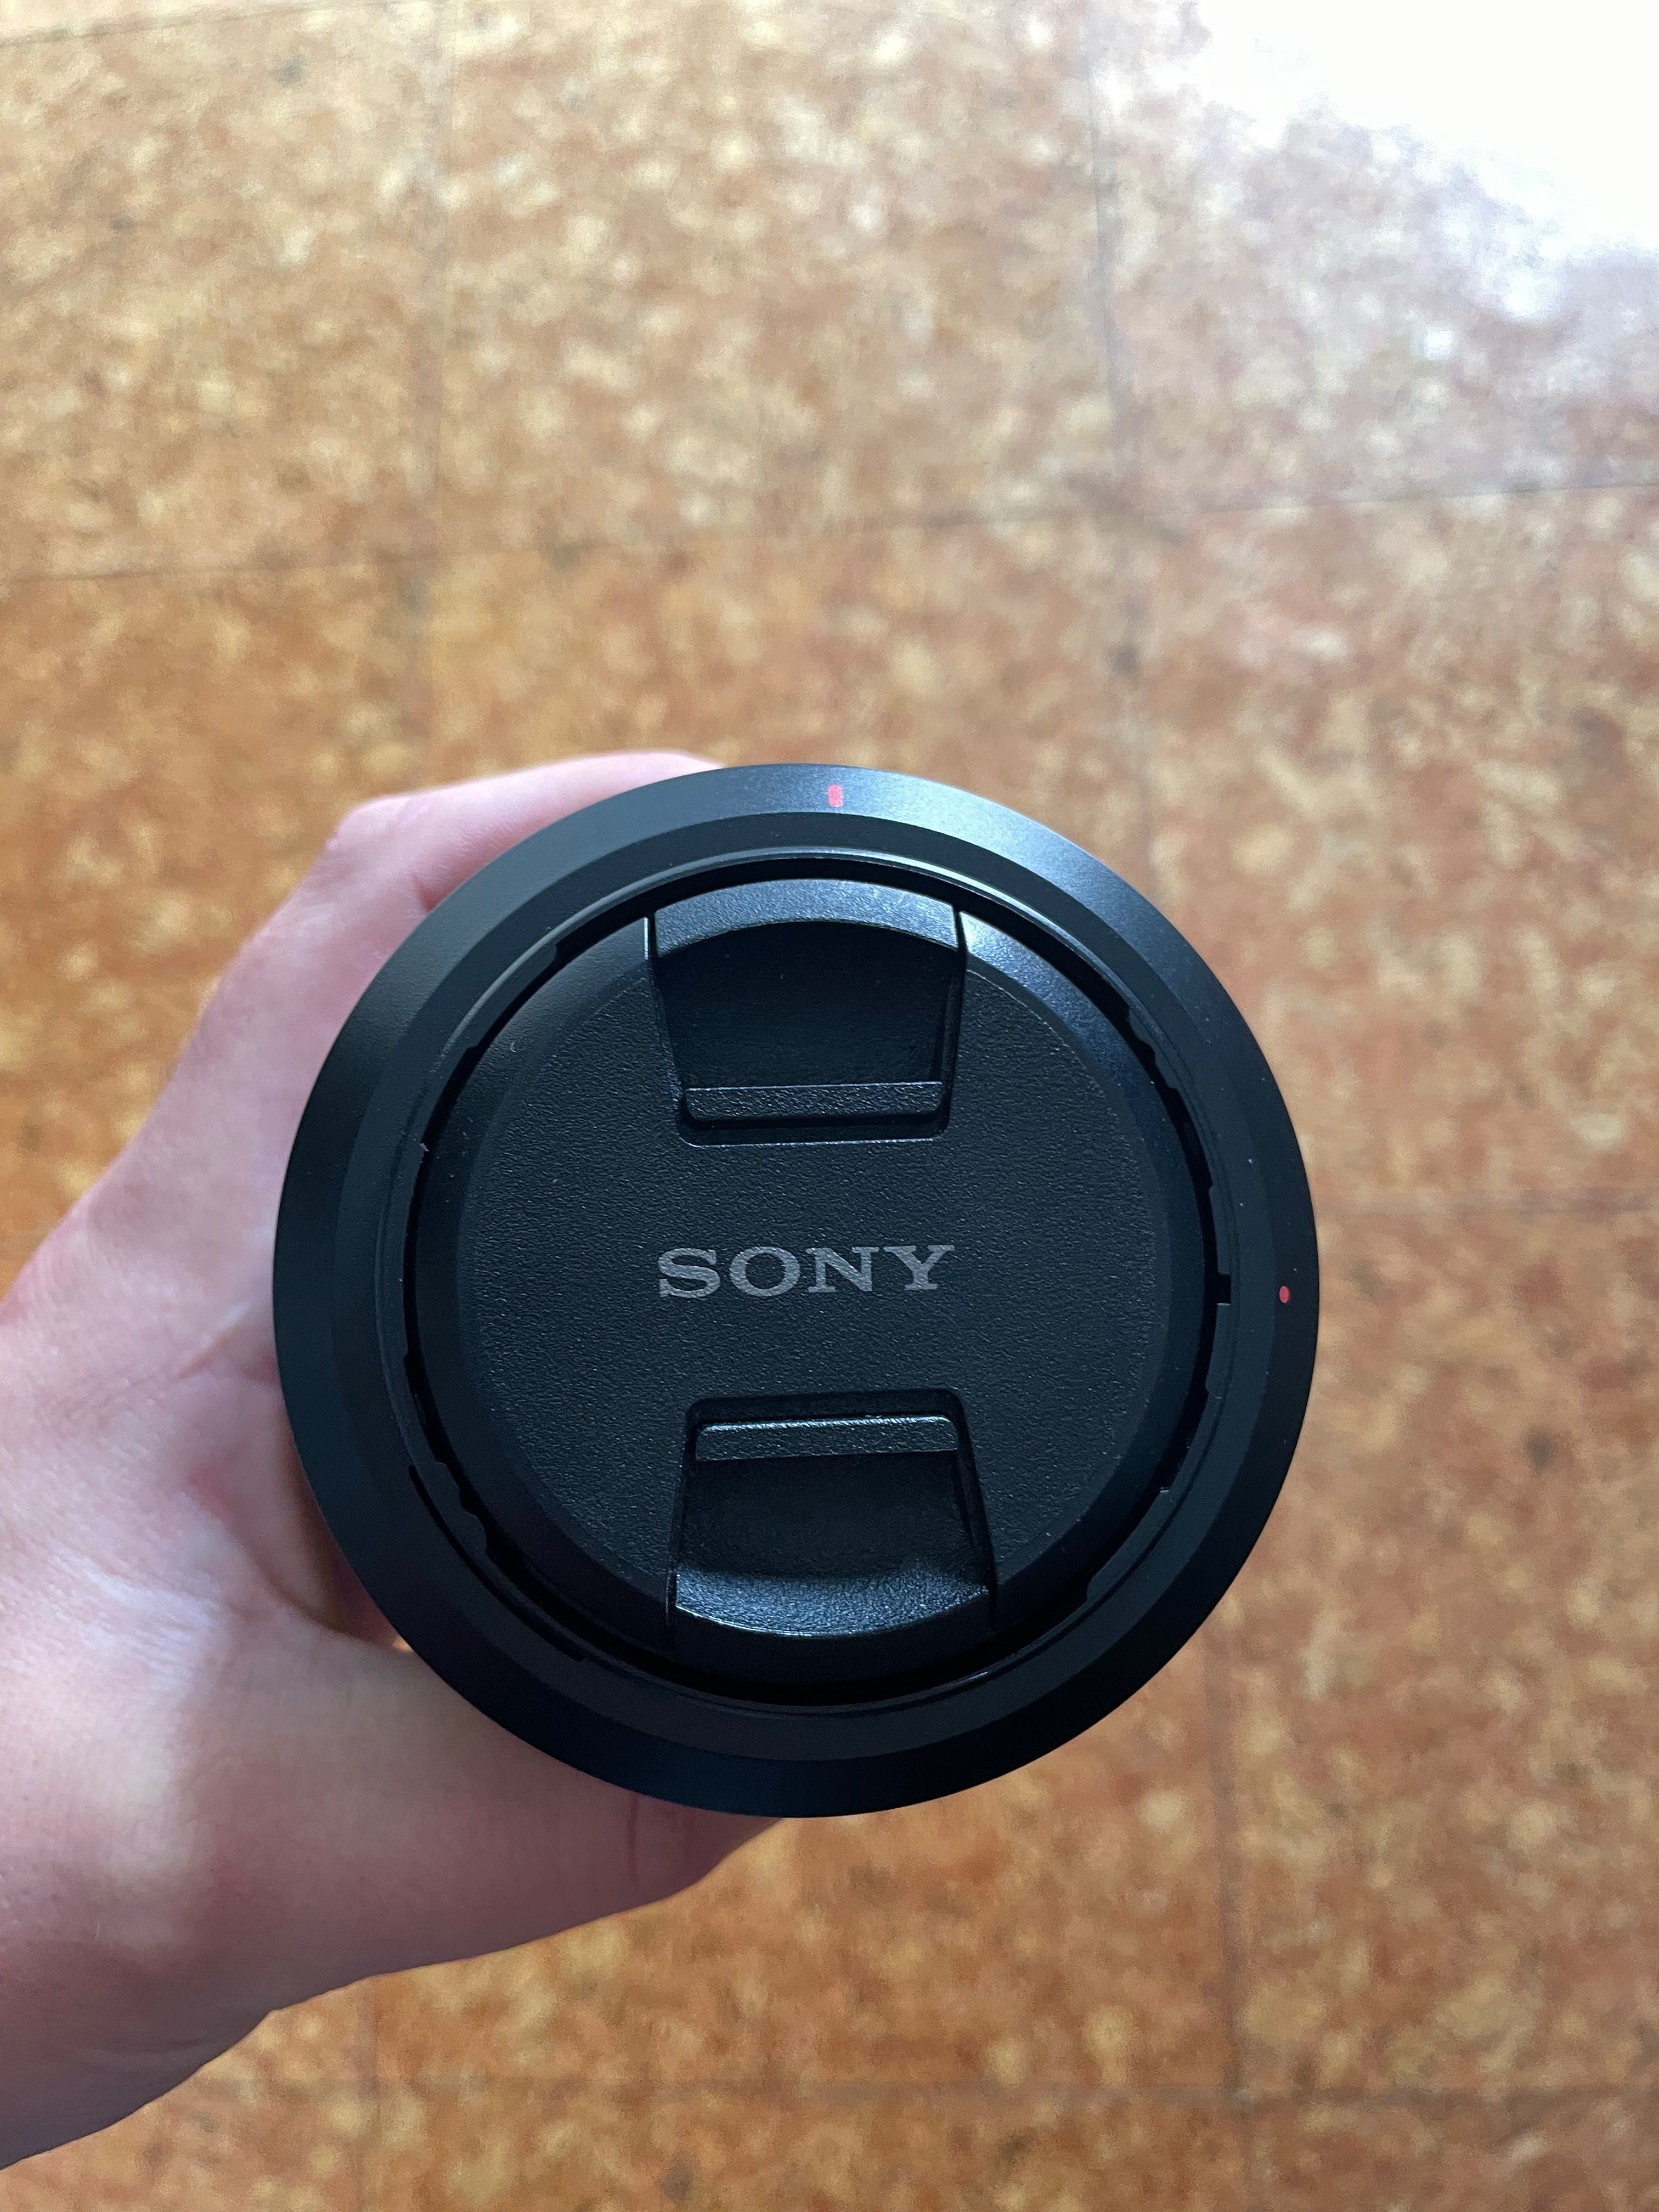 Sony lente 28-70mm F3.5-5.6 como nova